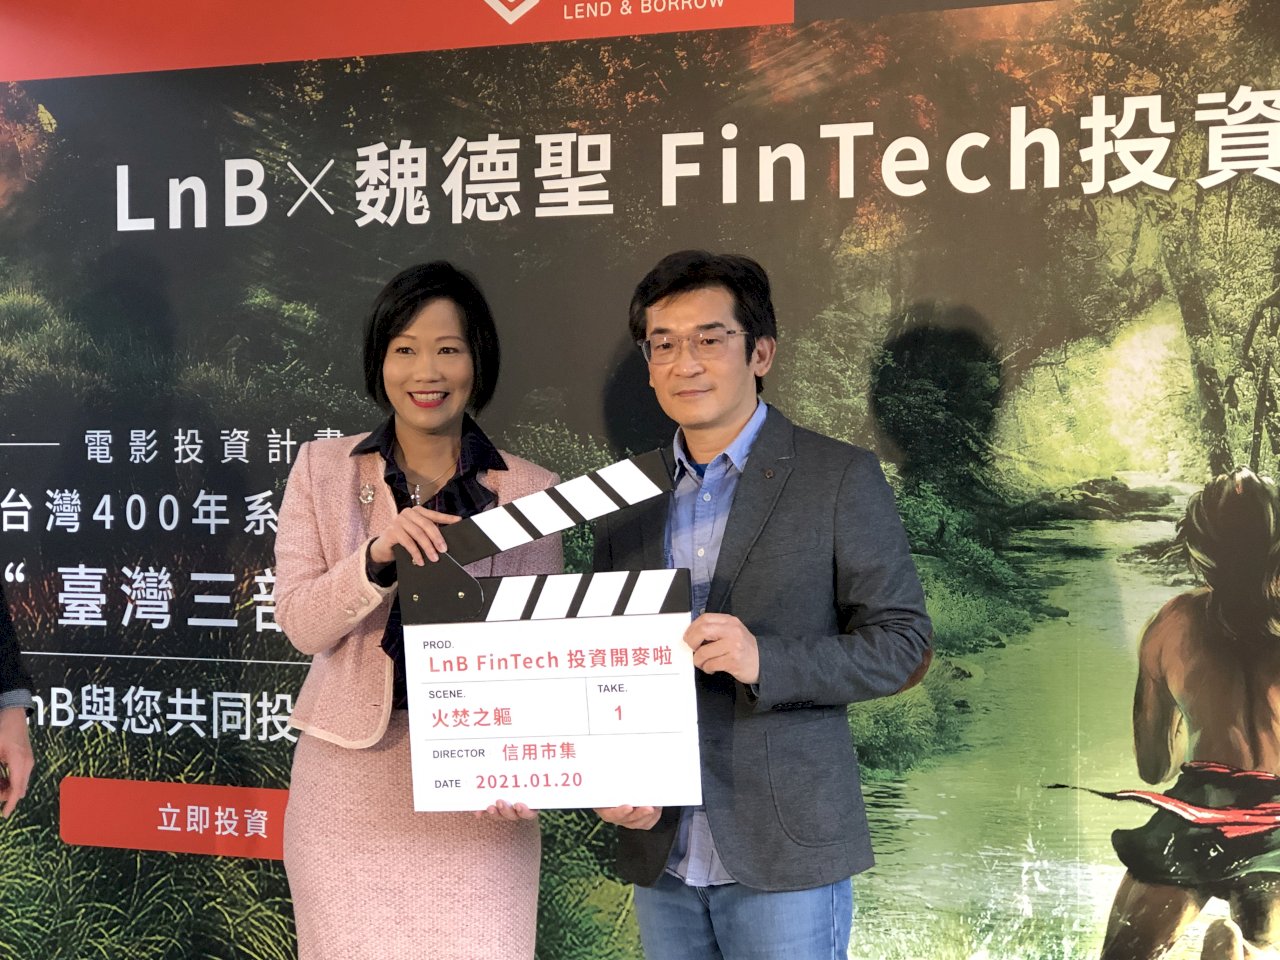 魏德聖8月開拍台灣三部曲 首度與FinTech合作讓投資人也能軋一角